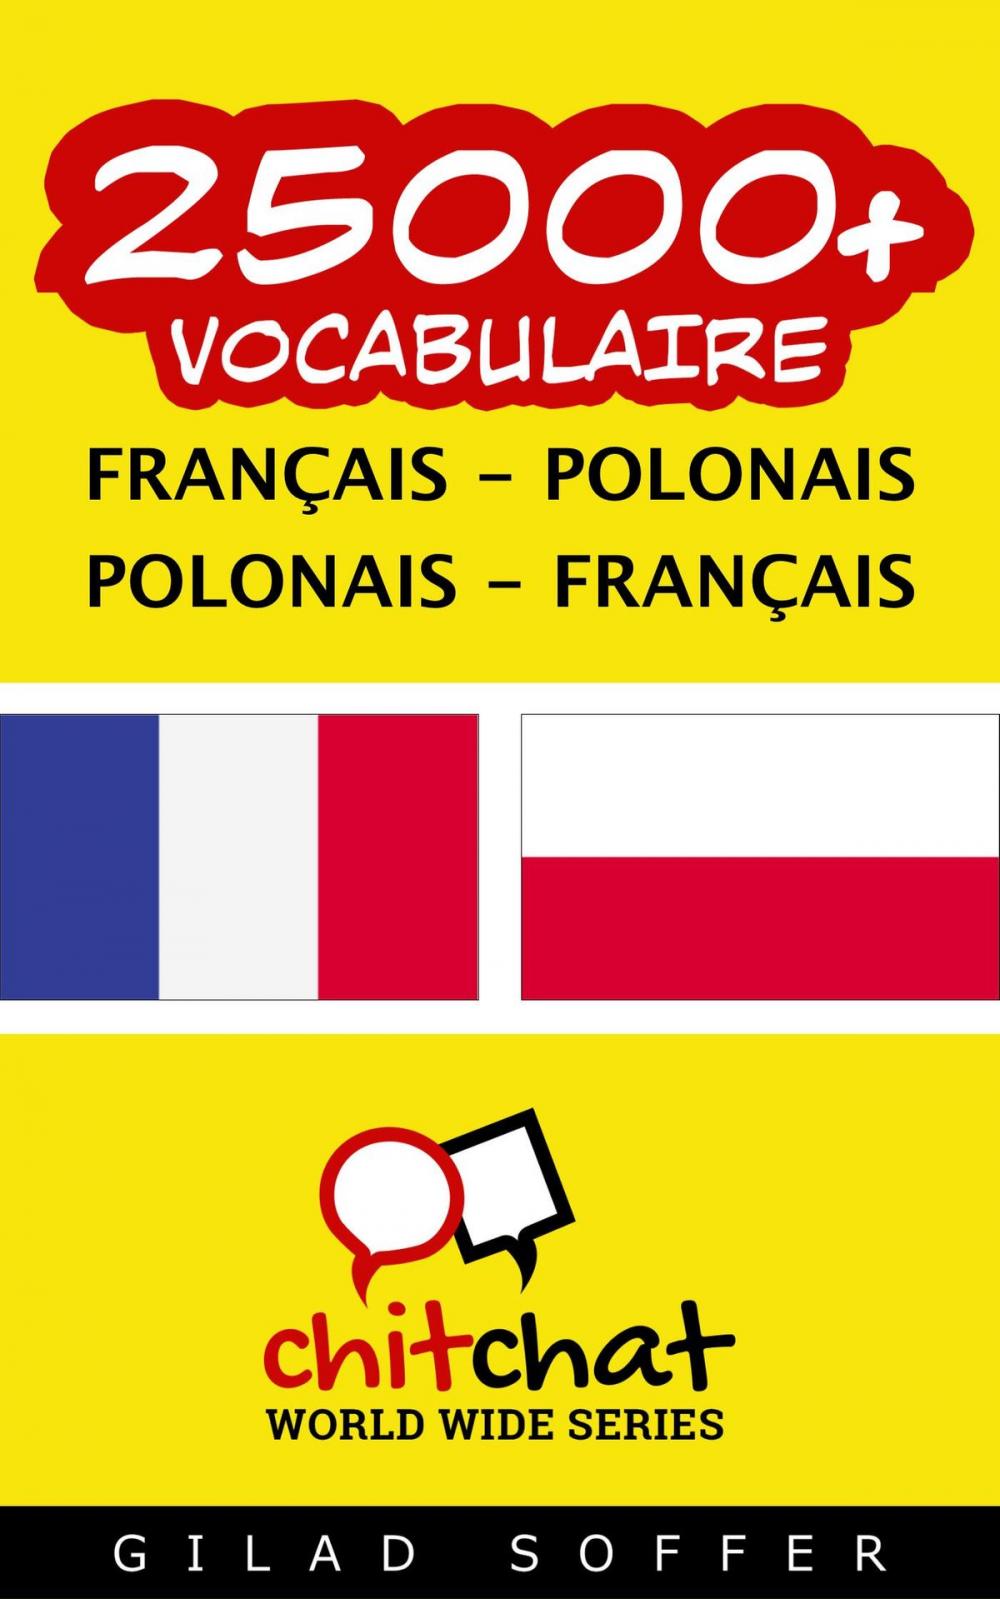 Big bigCover of 25000+ vocabulaire Français - Polonais